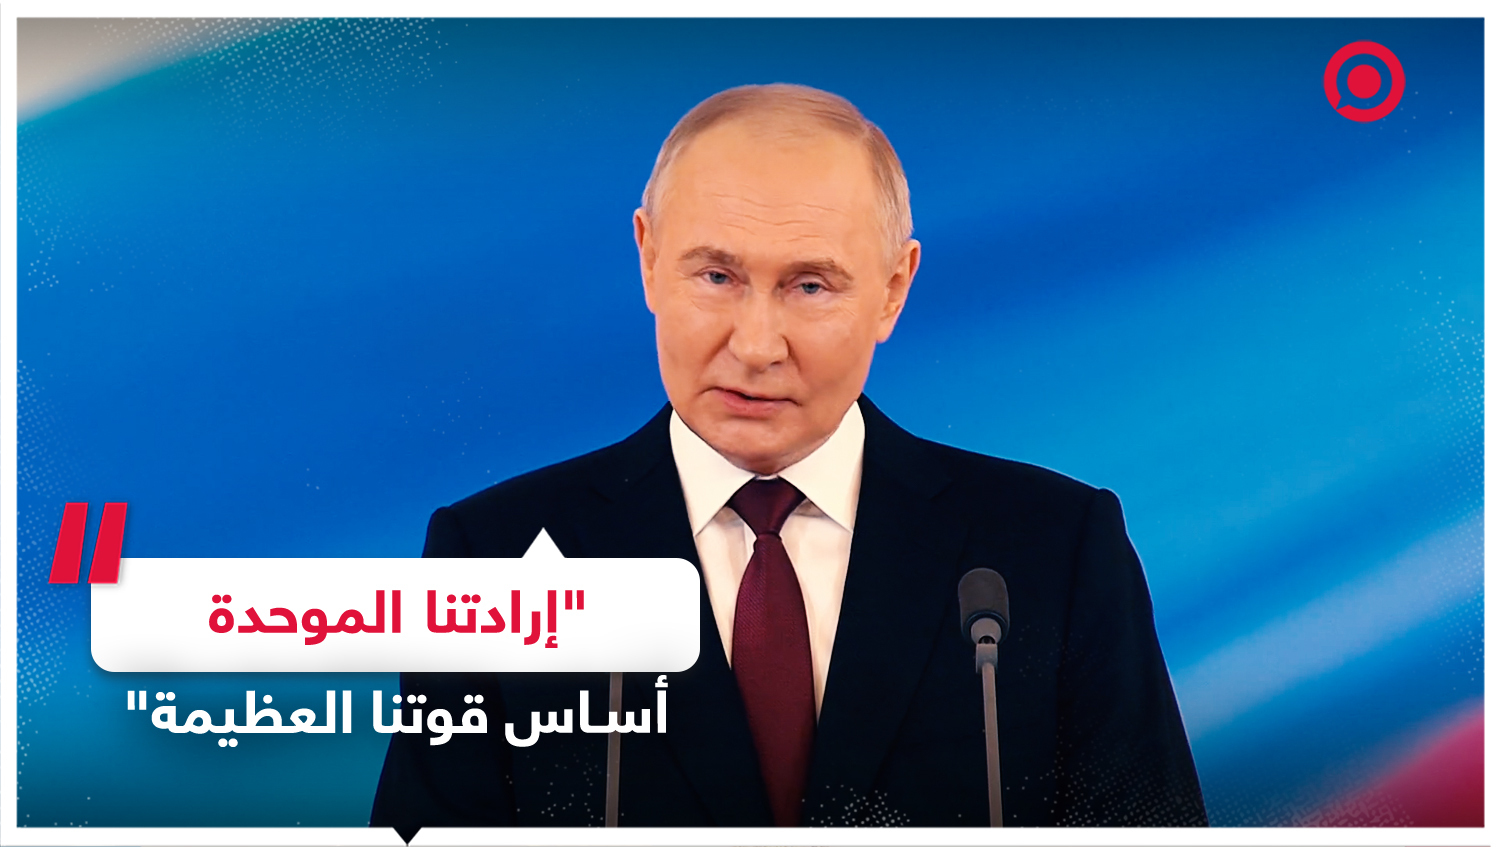 بوتين: مصالح وأمن الشعب الروسي ستبقى الغاية العليا بالنسبة لي